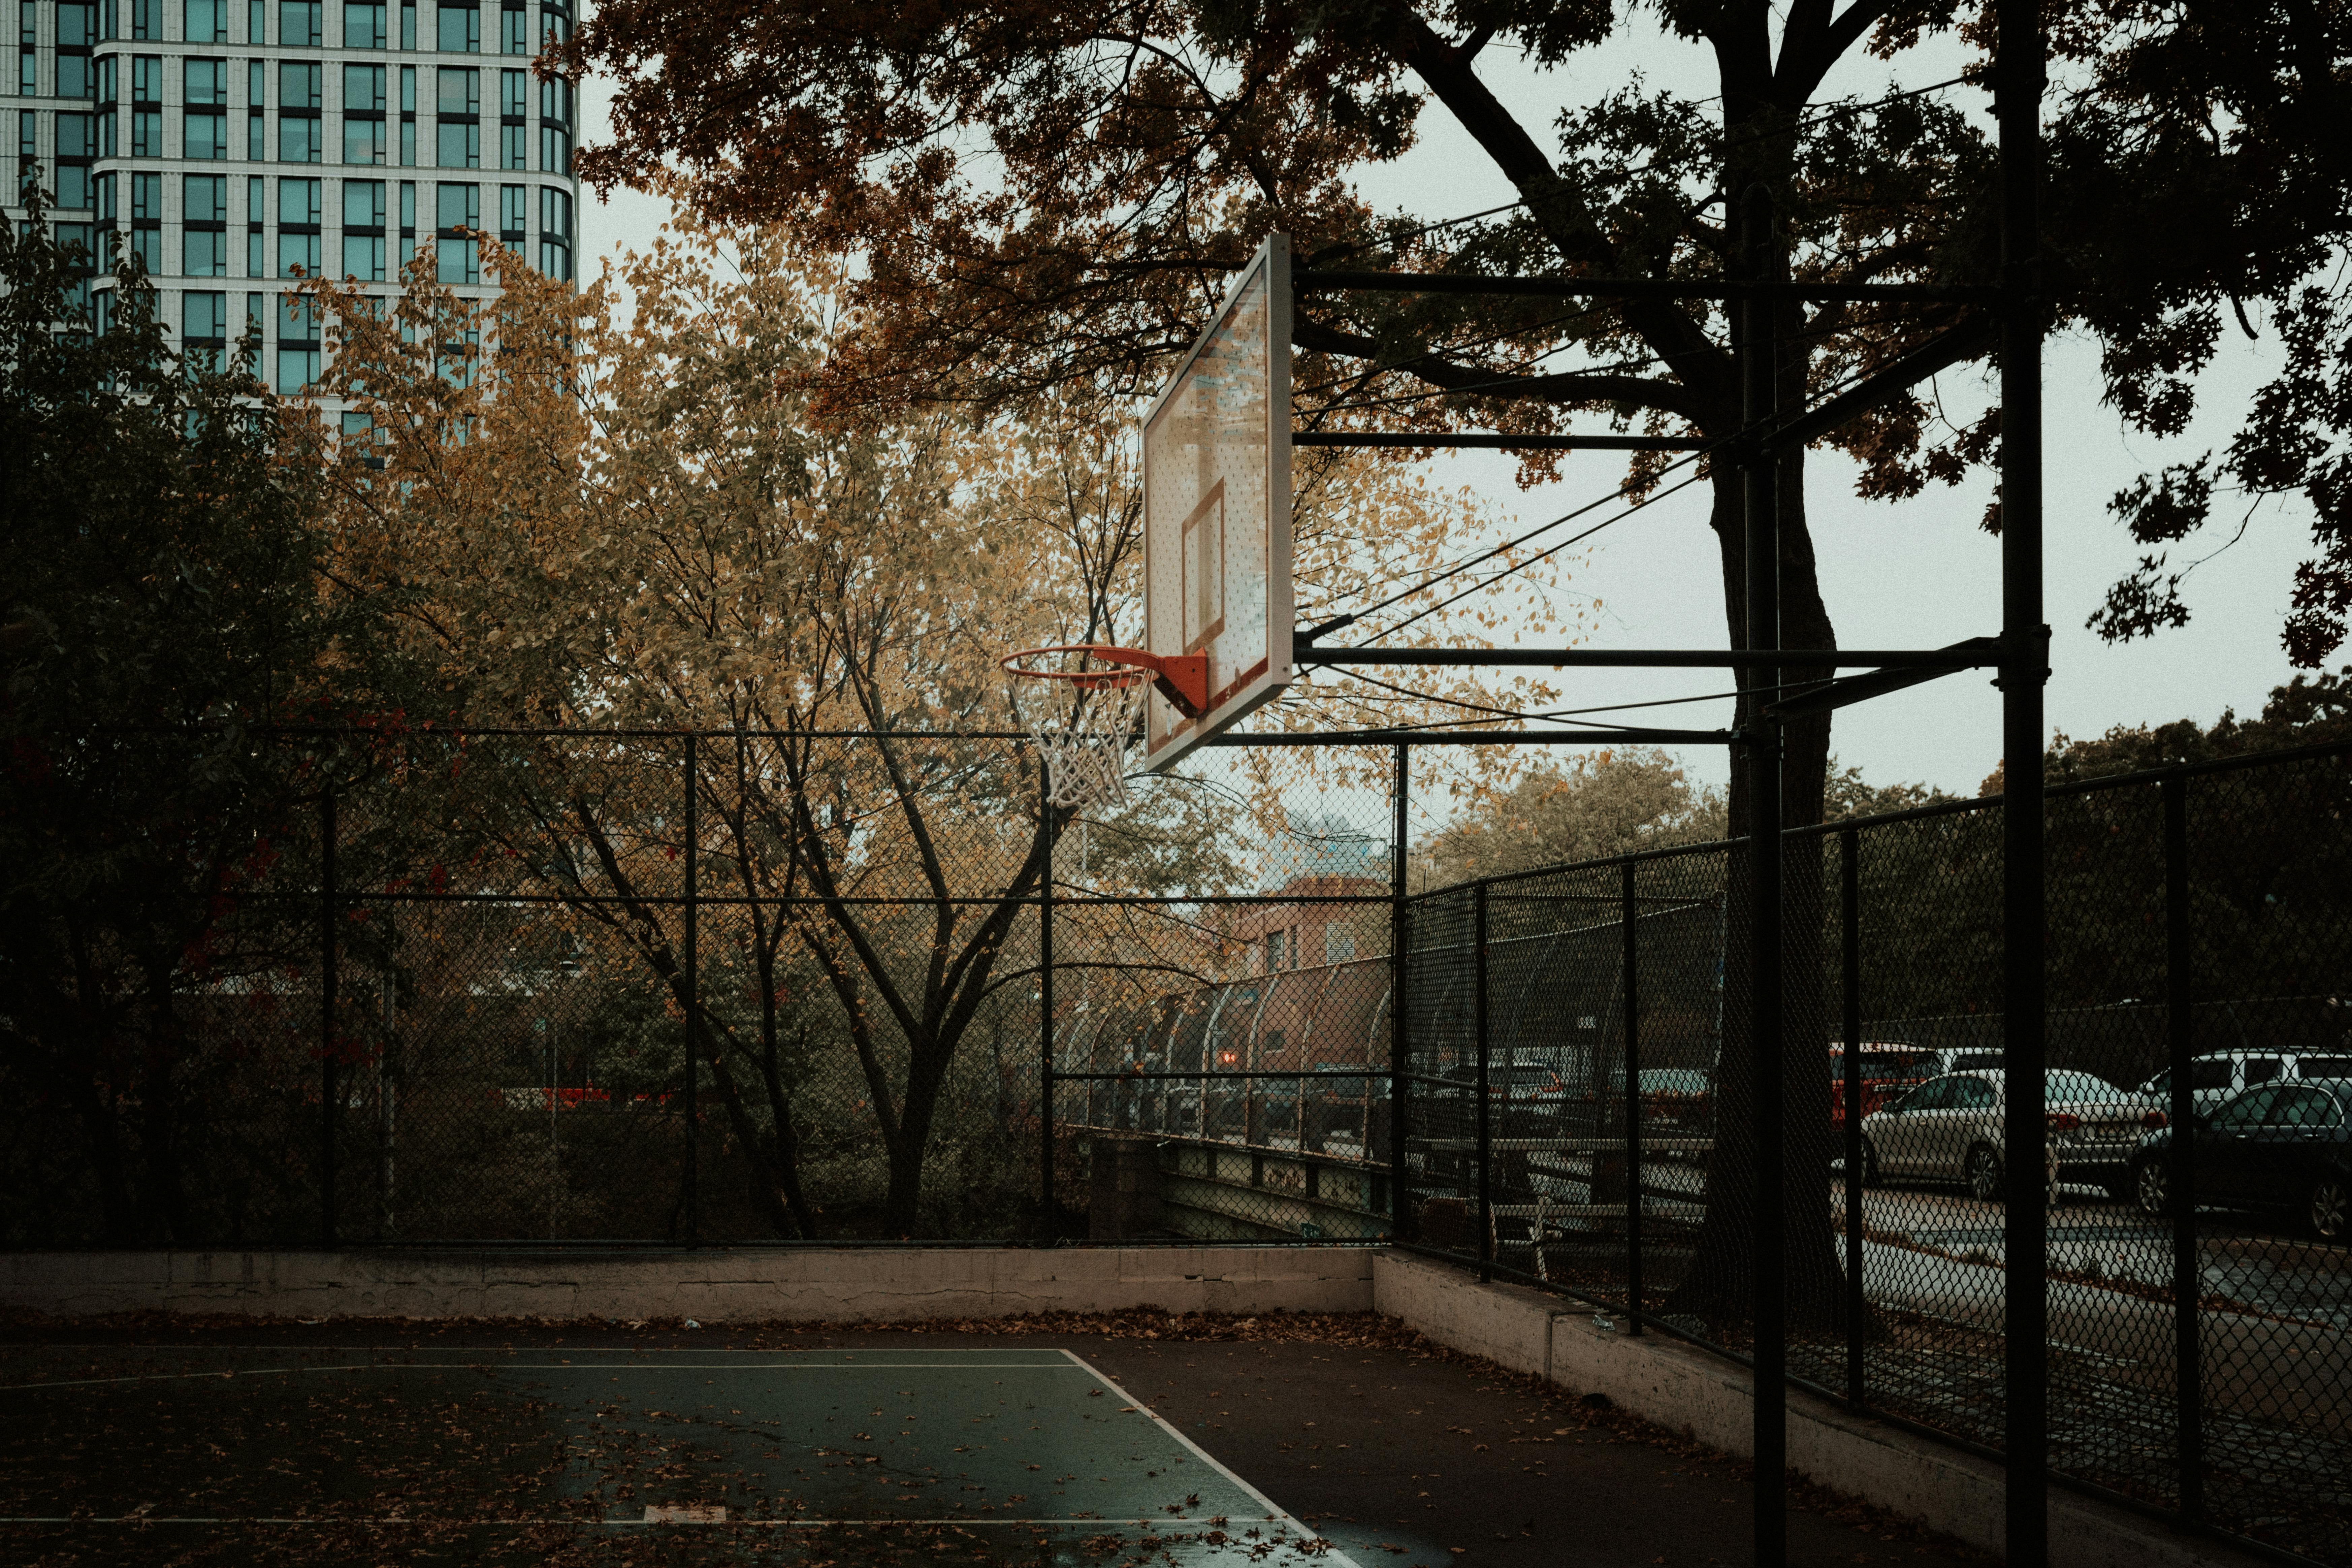 street basketball court wallpaper